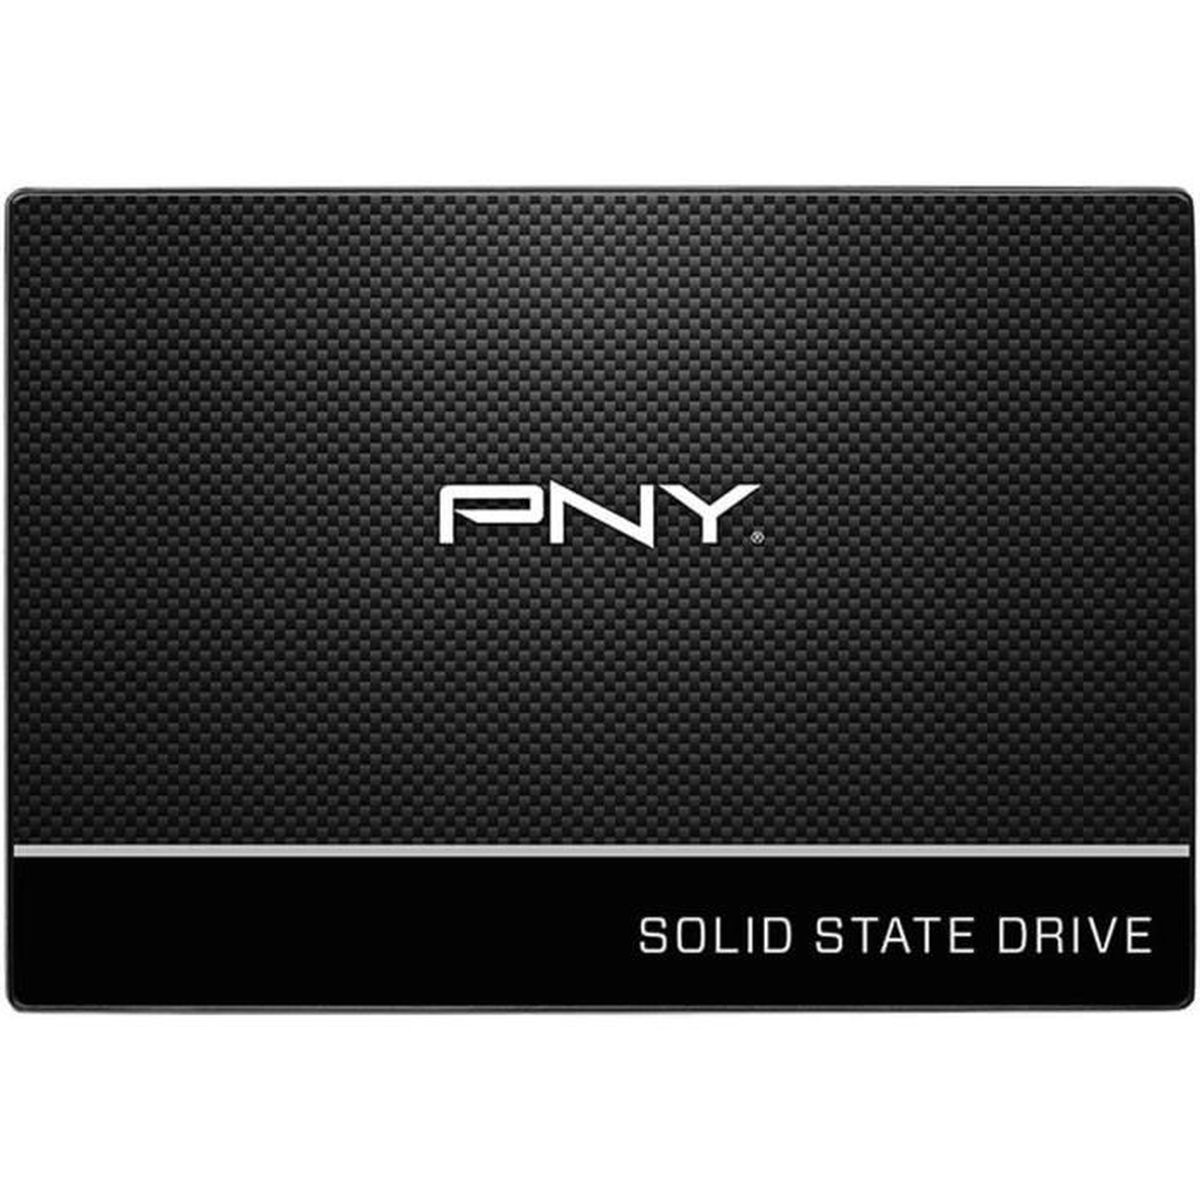 SSD7CS900-4TB-RB, 4 PNY TB, intern SSD,